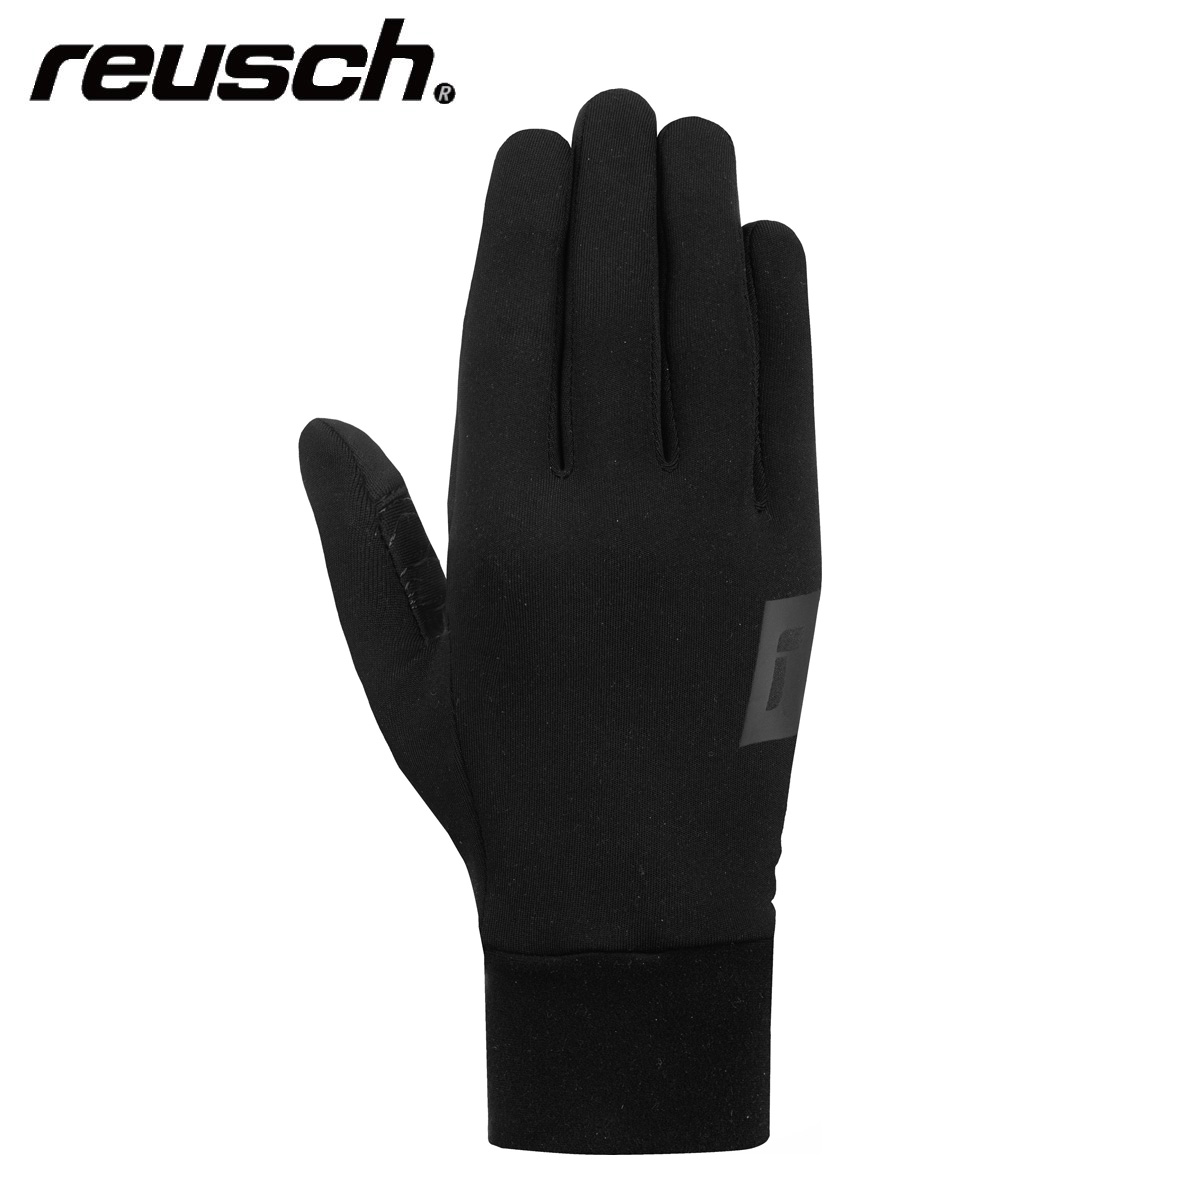 【Ski Glove】REUSCH - Ski - Gear Shop Japanese Ski Tanabe Retailer Sports Brand - Skiwear and Top